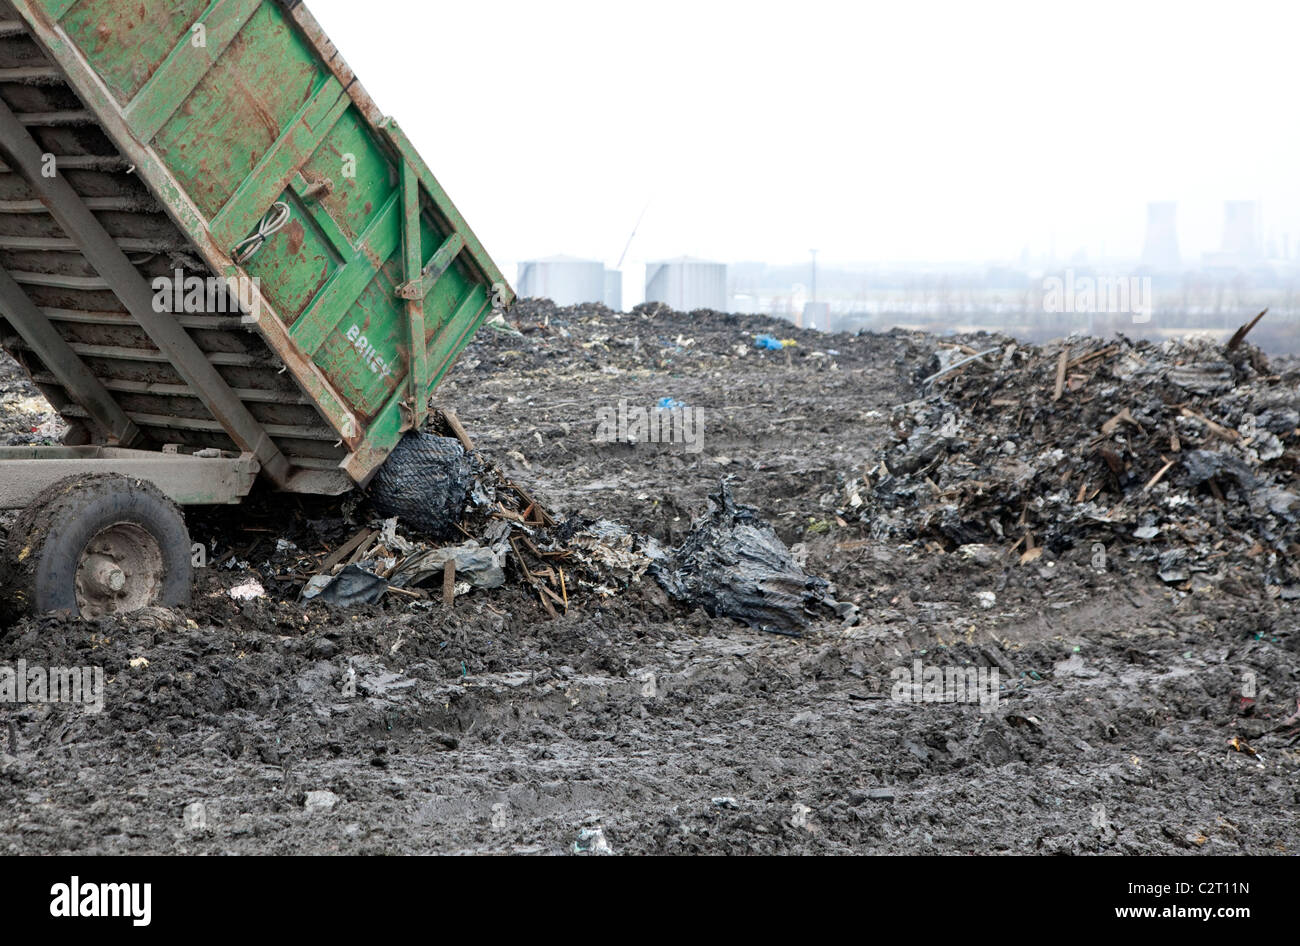 Industrielle Kläranlage, England - dumping ungefährliche Abfälle auf Deponien Stockfoto